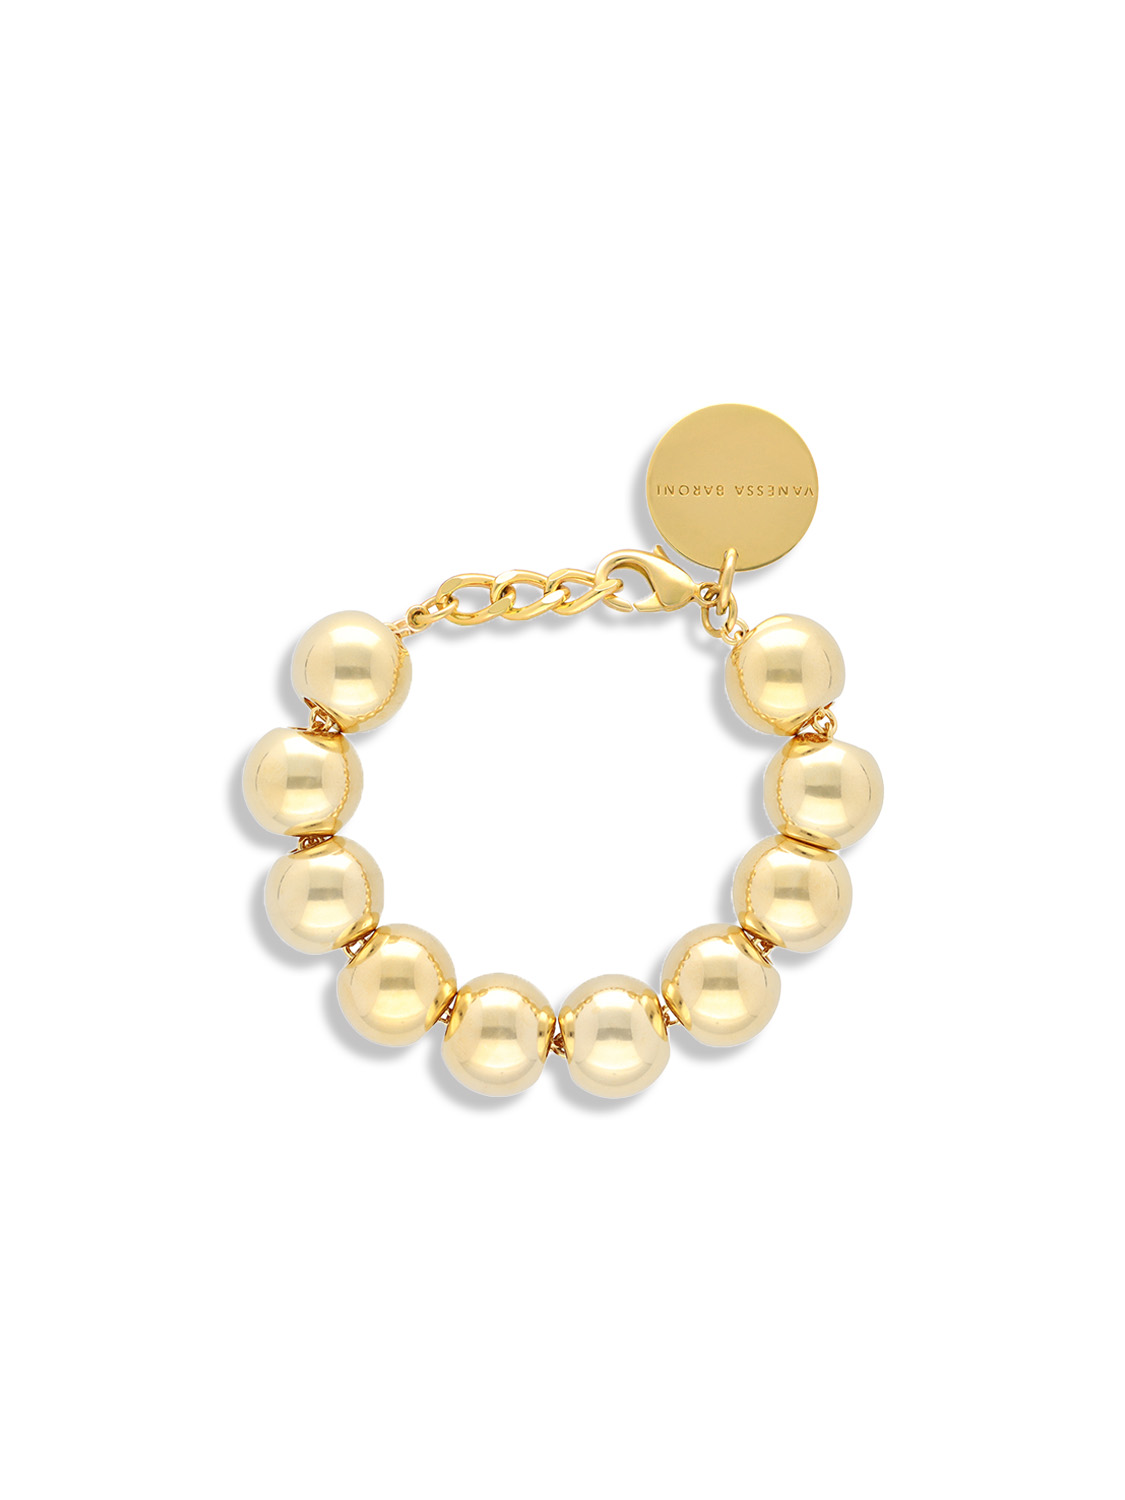 Vanessa Baroni Beads Bracelet – Armband in Kugelndesign gold One Size